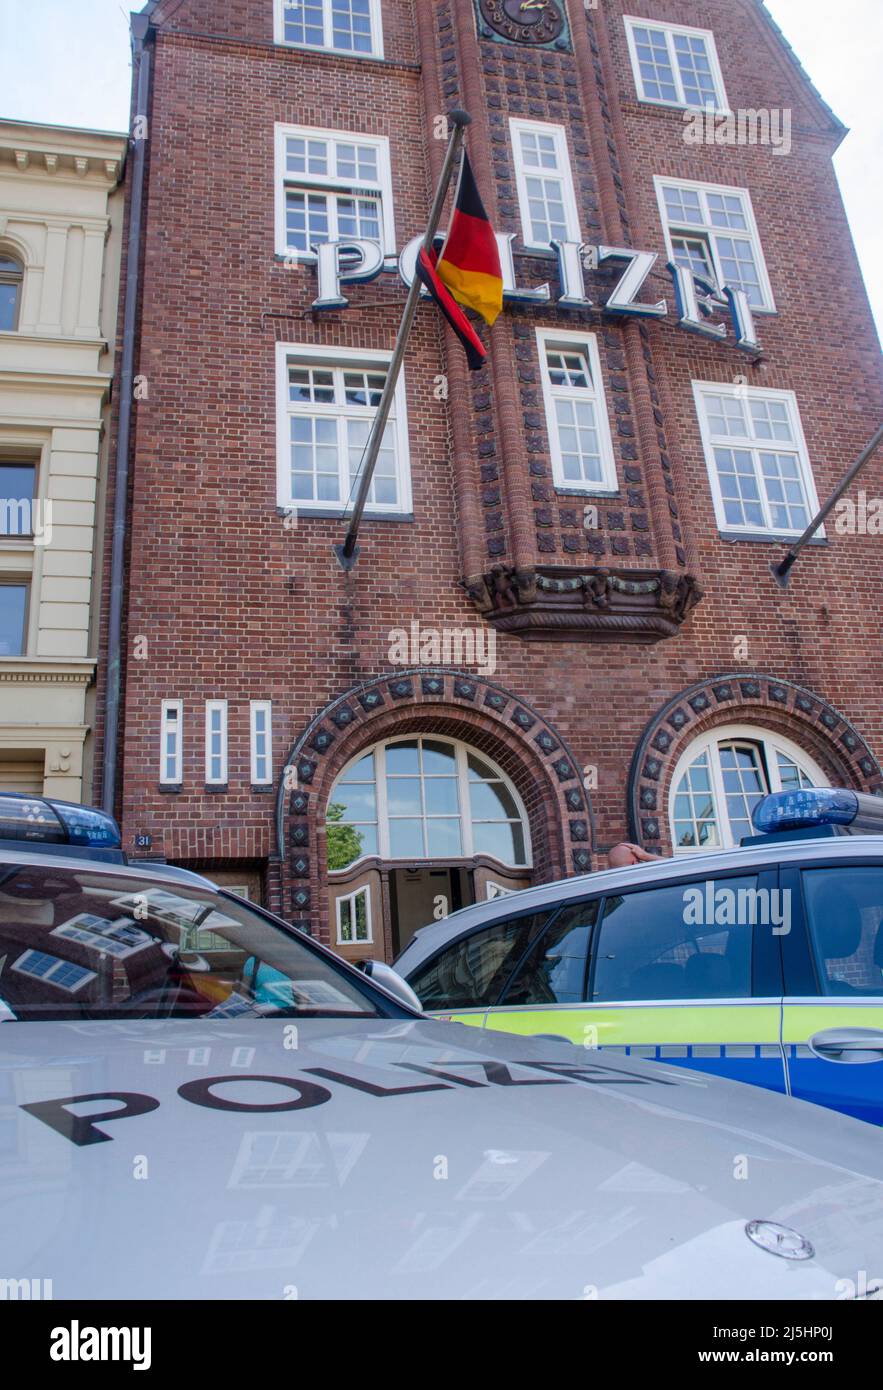 Hamburg - Die Davidwache, bezeichnet, ist das Gebäude des Hamburger Polizeikommissariats 15 Stock Photo